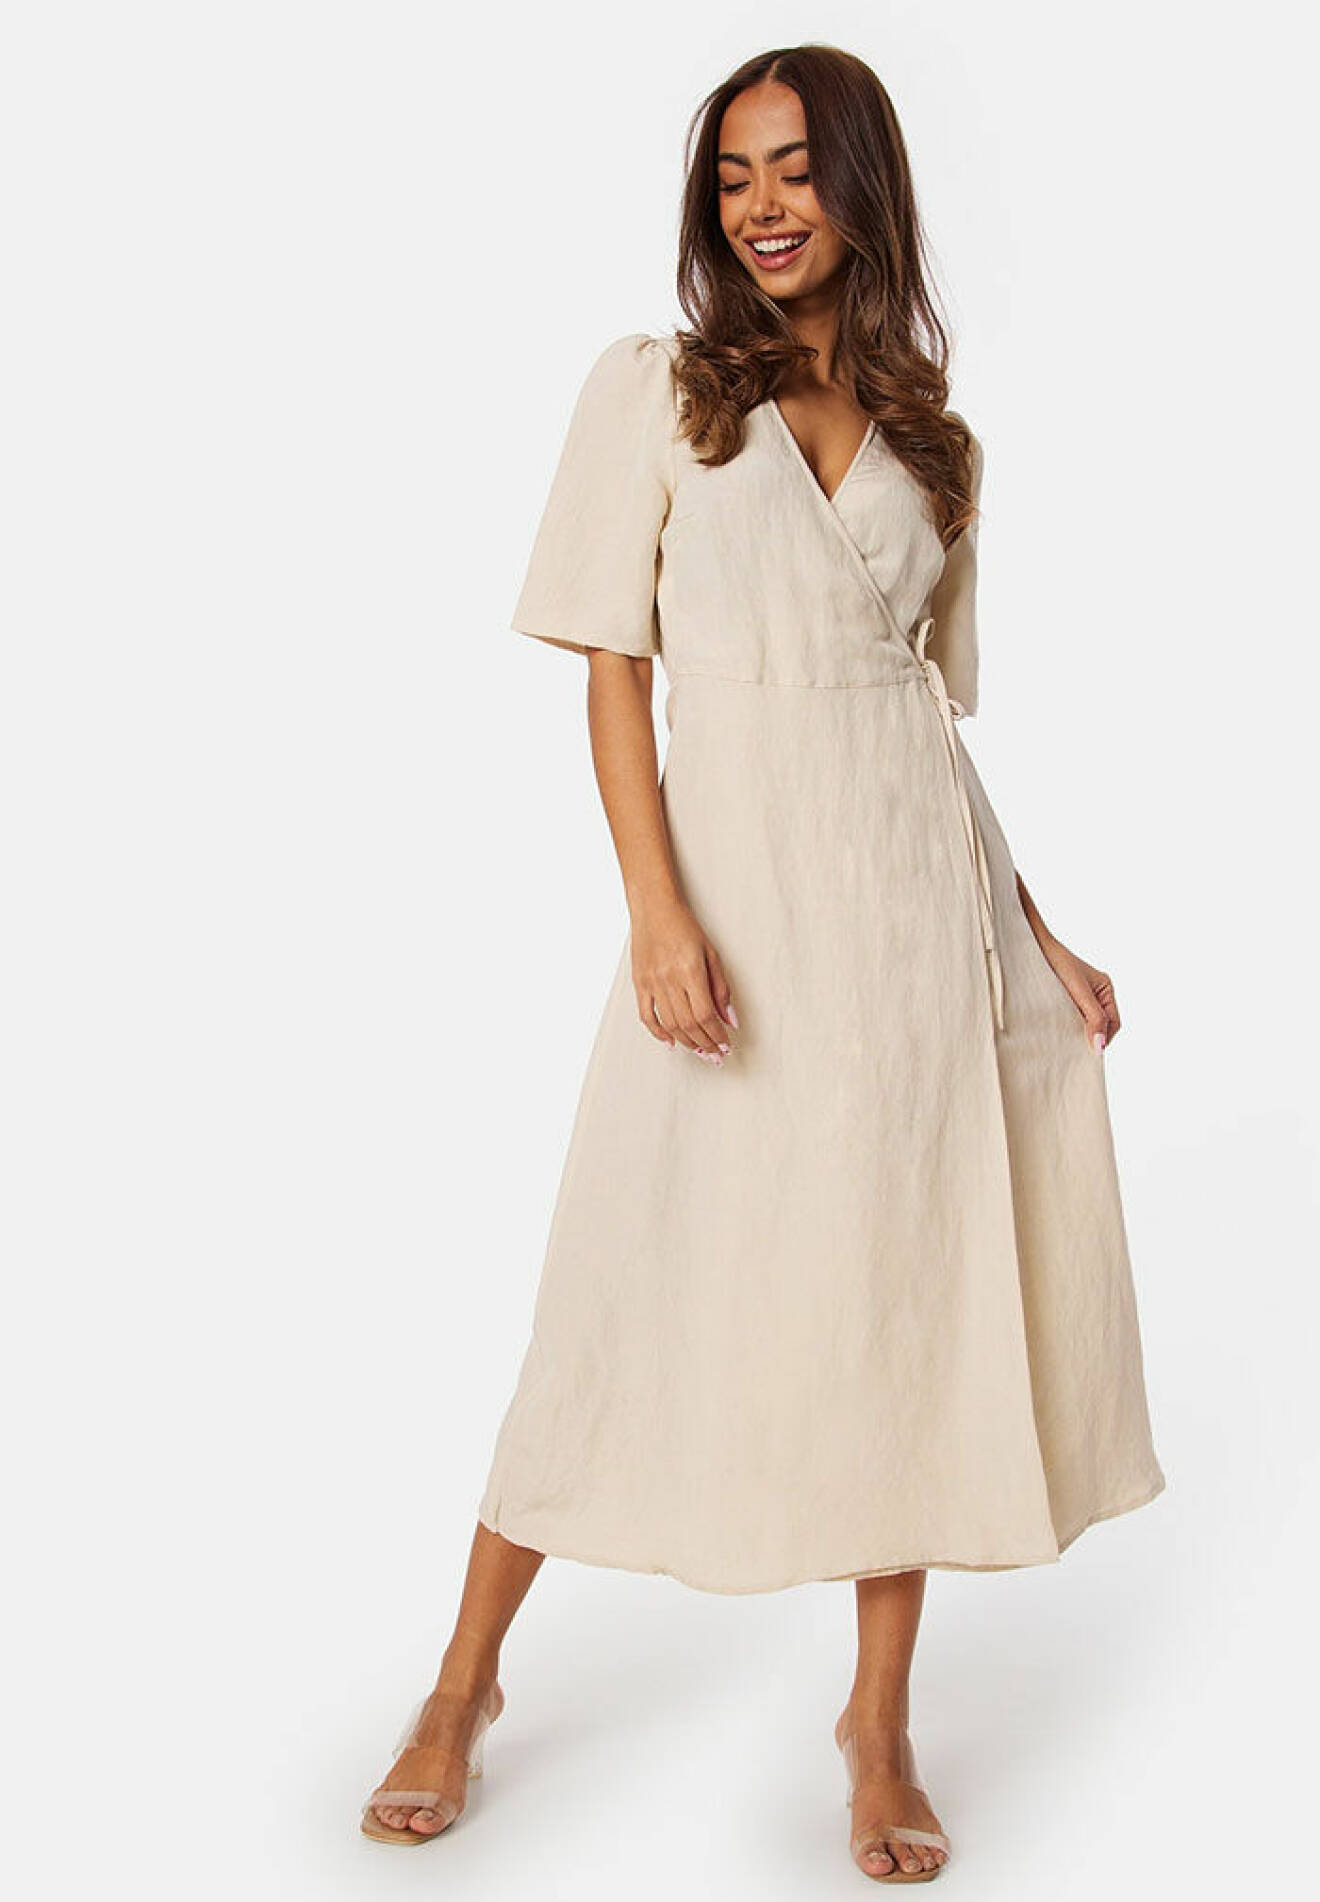 Midiklänning i linne med omlott, a-linjeformad kjol och knytning i sidan från Bubbleroom